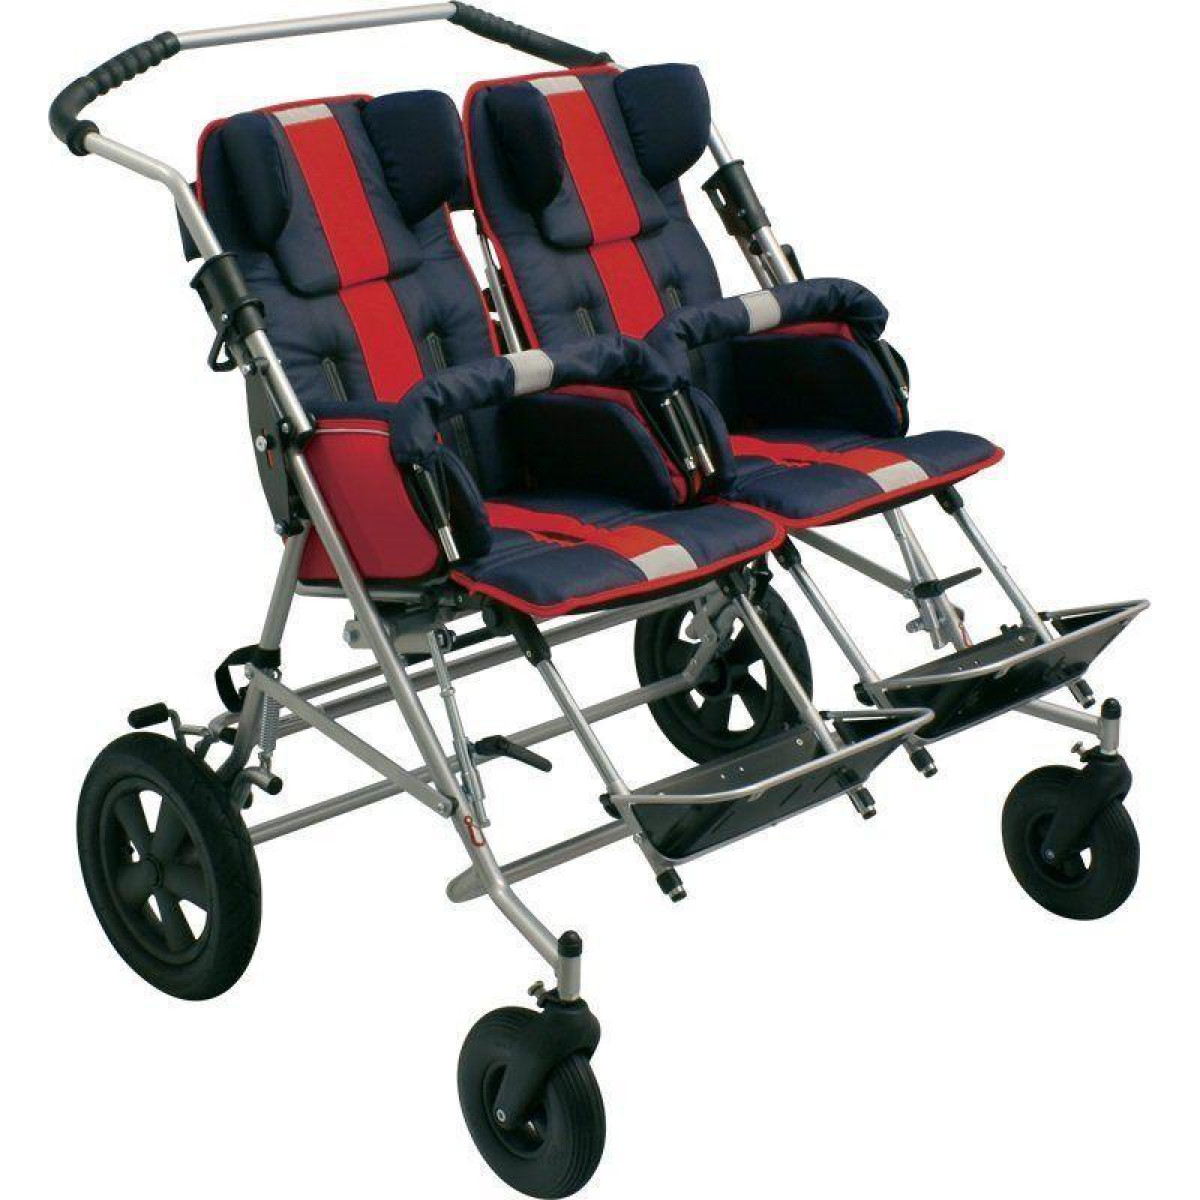 Прогулочная коляска для детей с дцп. Детская инвалидная коляска ДЦП patron Tom 4 Classic. Коляска для ДЦП Tom 4. Patron коляска для детей с ДЦП. (7-02-02)Кресло коляска прогулочная для детей с ДЦП.